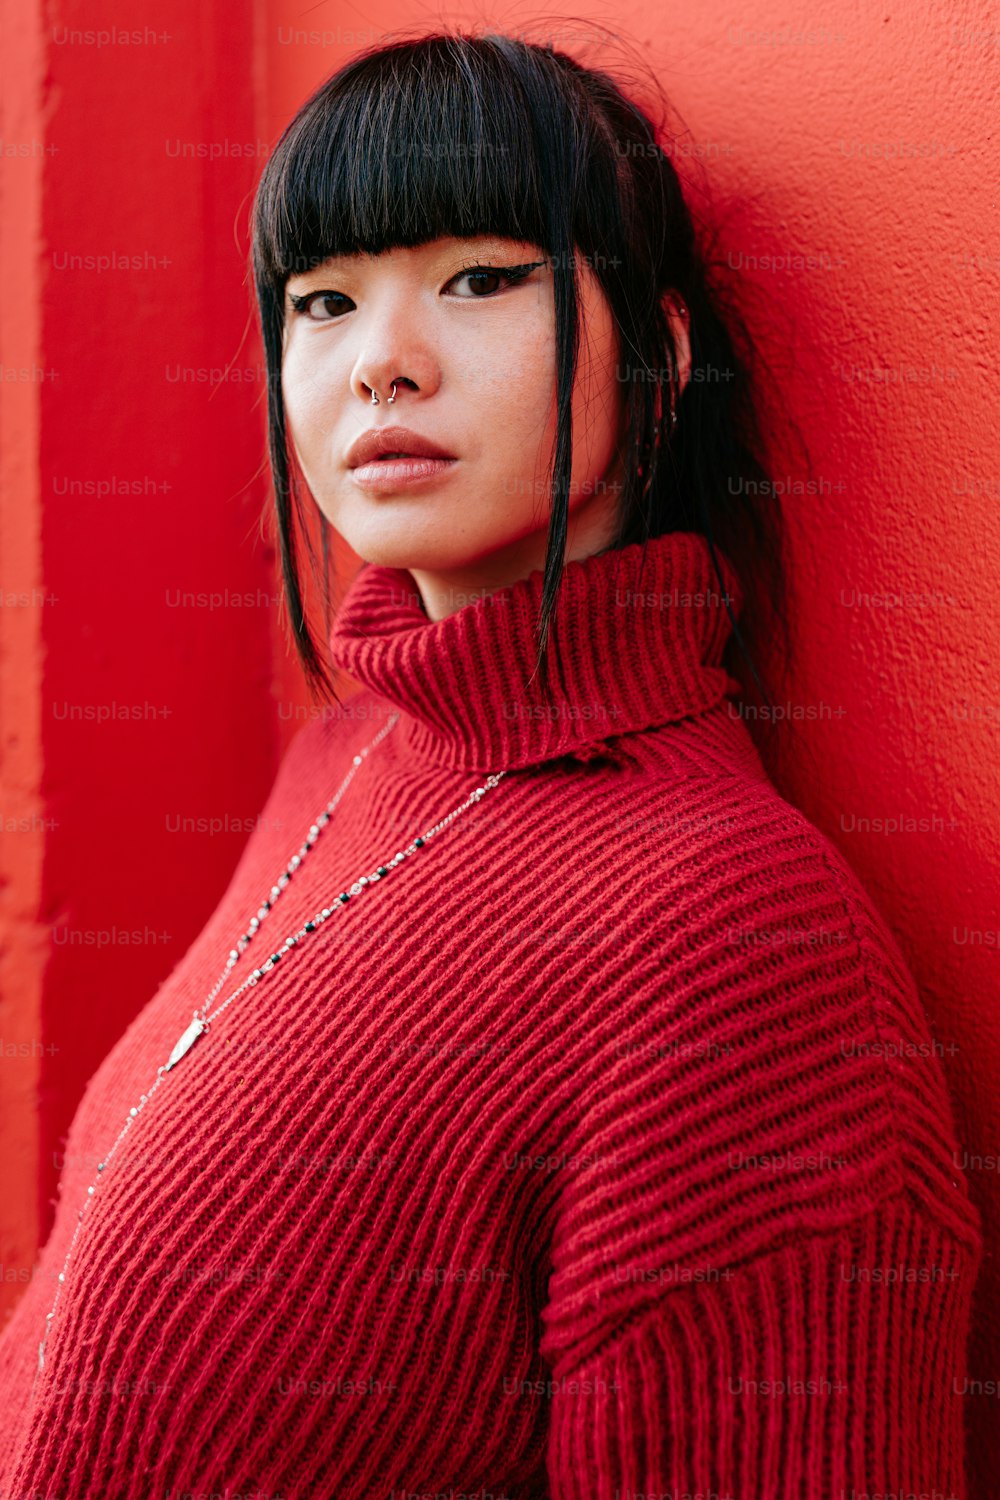 una mujer con un suéter rojo apoyada contra una pared roja